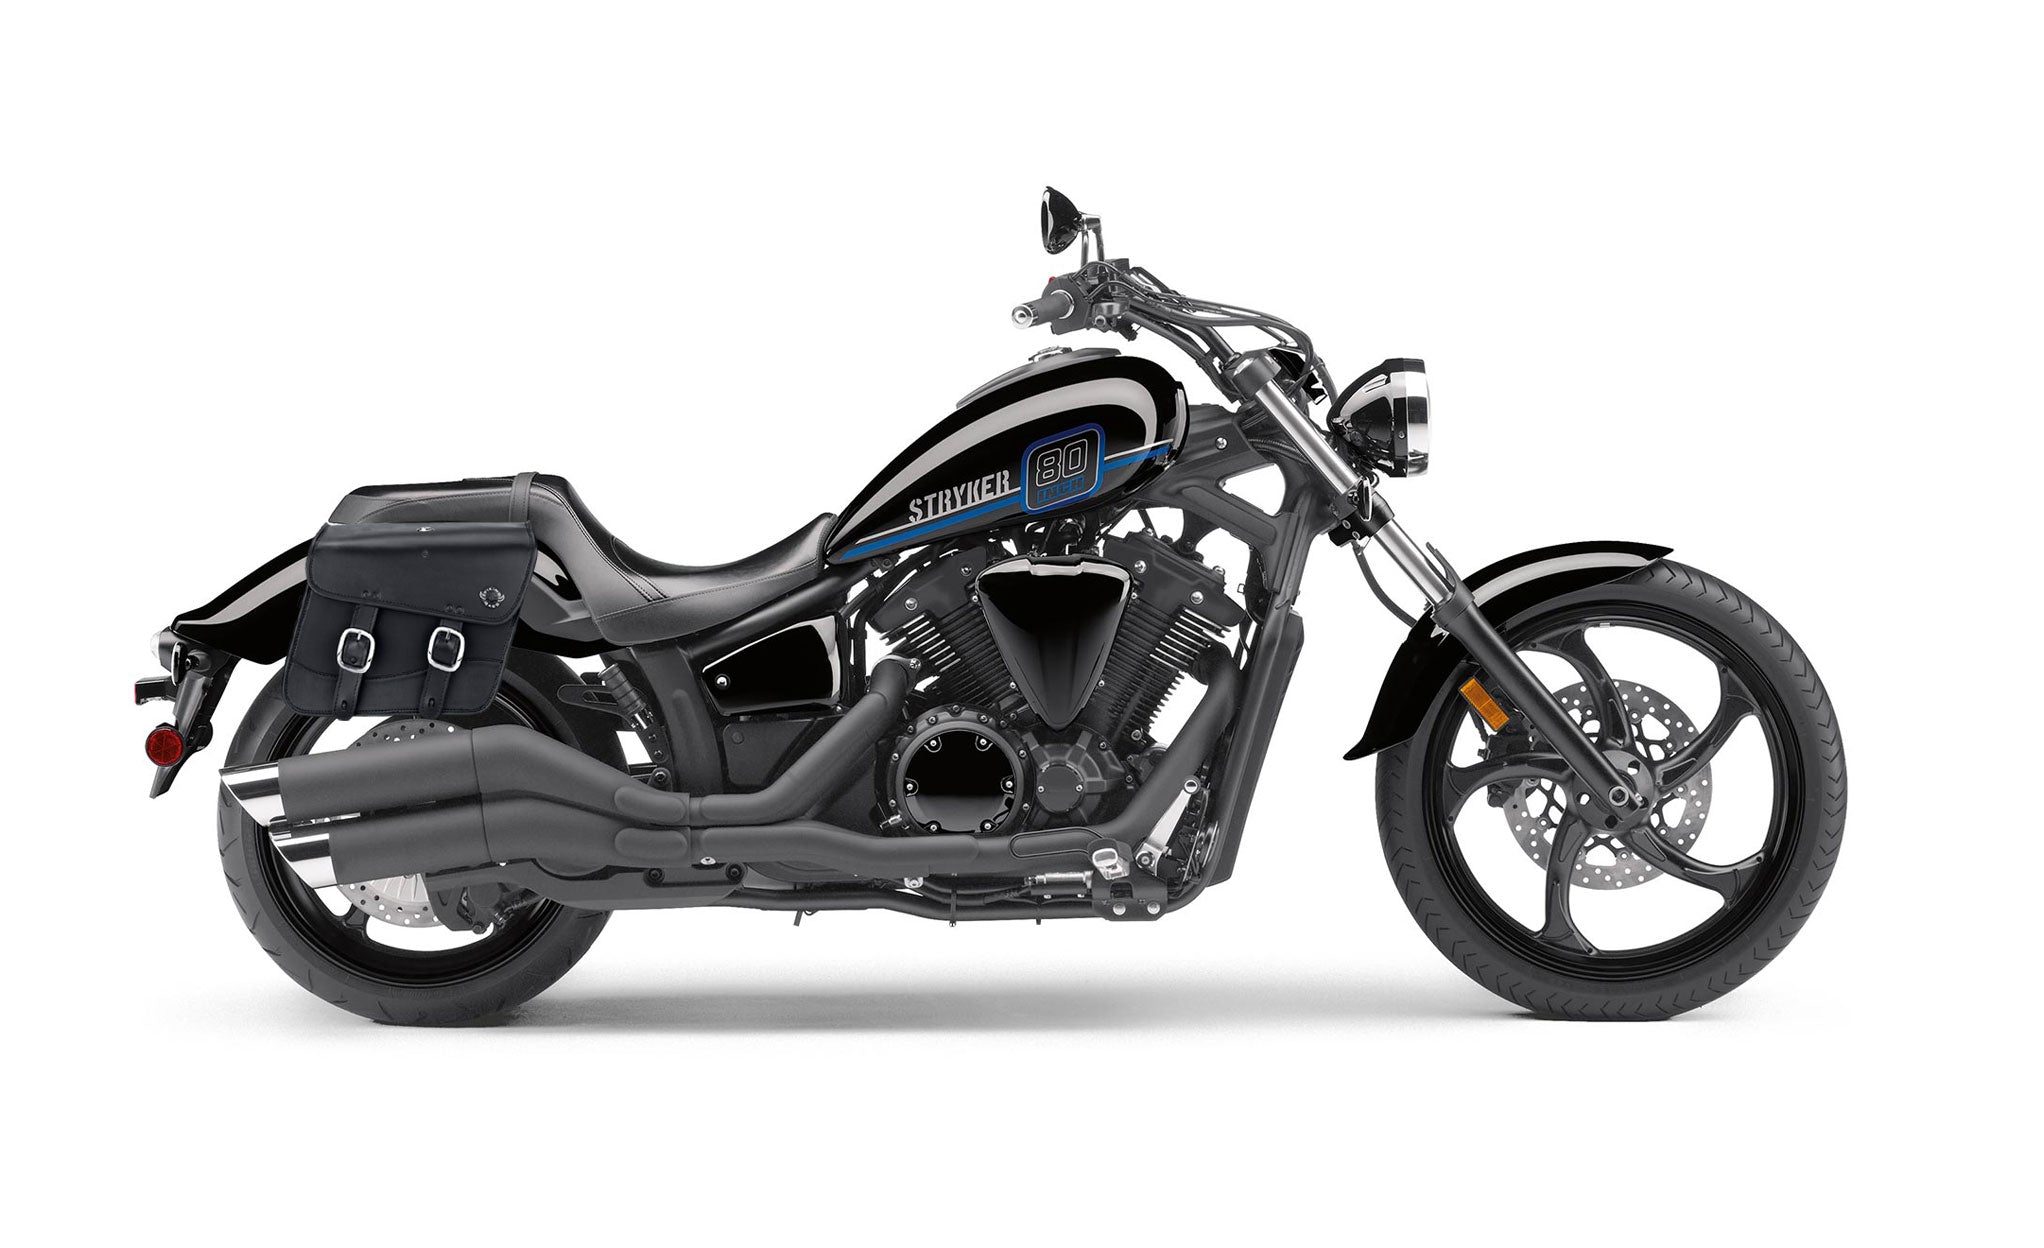 Viking Thor Medium Yamaha Stryker Leather Motorcycle Saddlebags on Bike Photo @expand